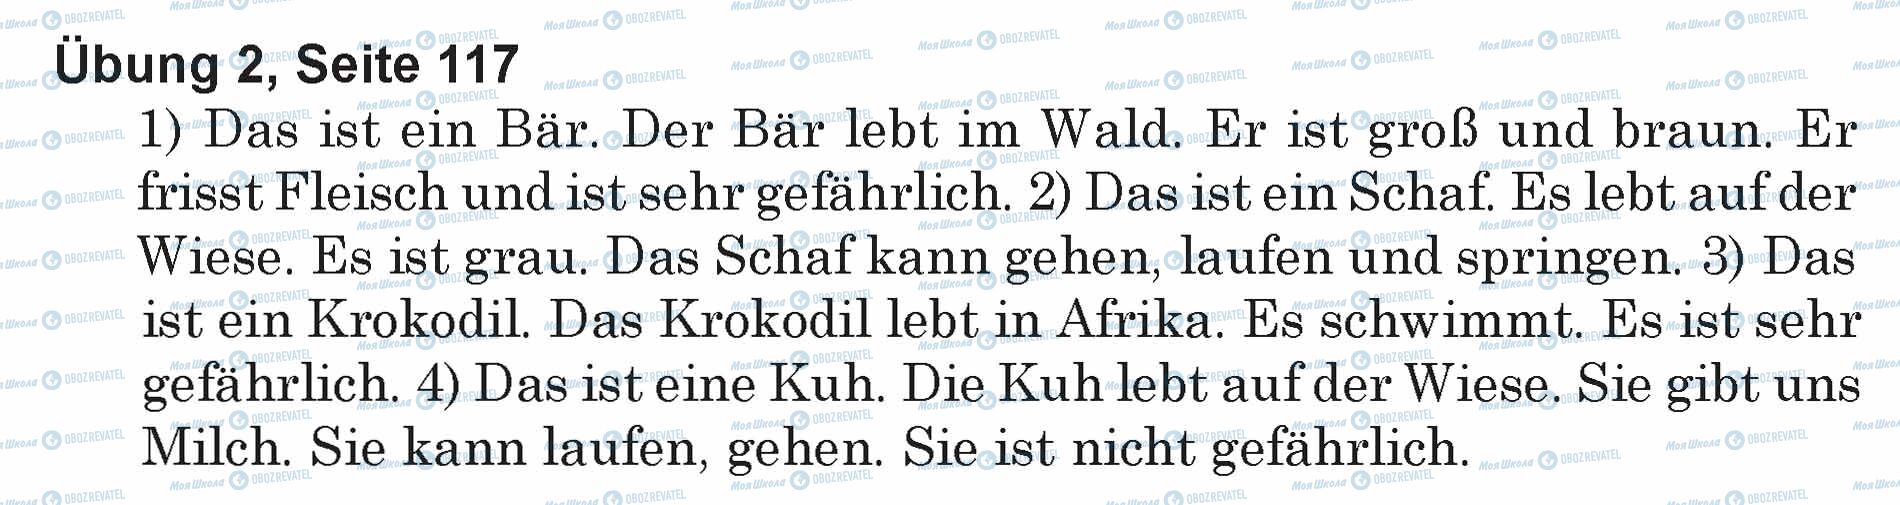 ГДЗ Немецкий язык 5 класс страница Ubung 2, Seite 117